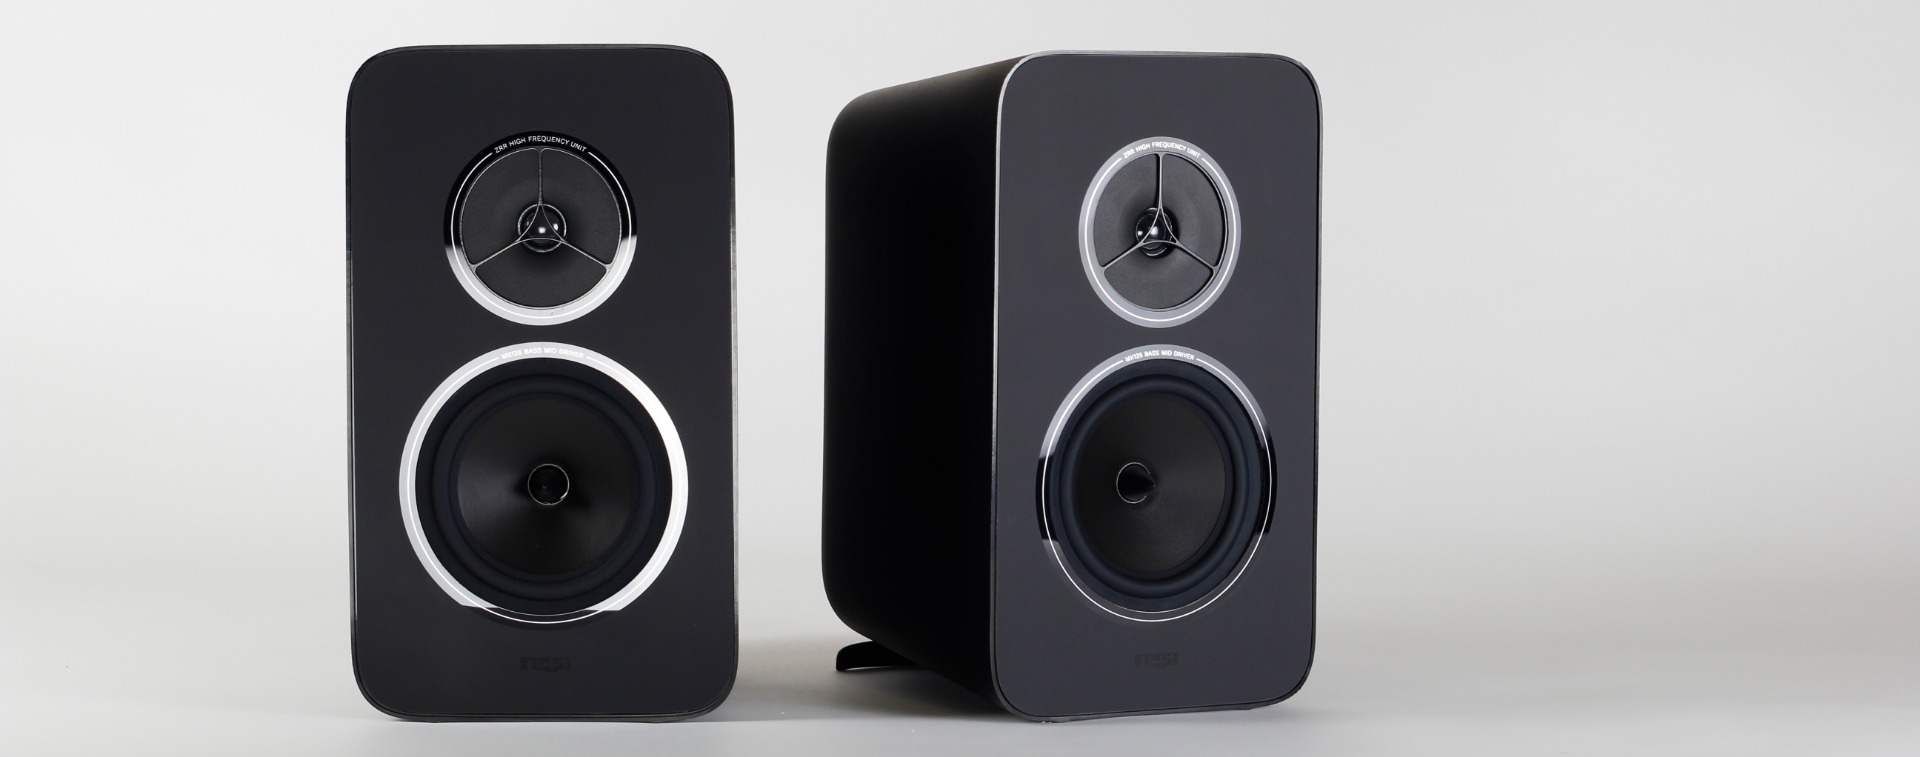 Kyte speakers